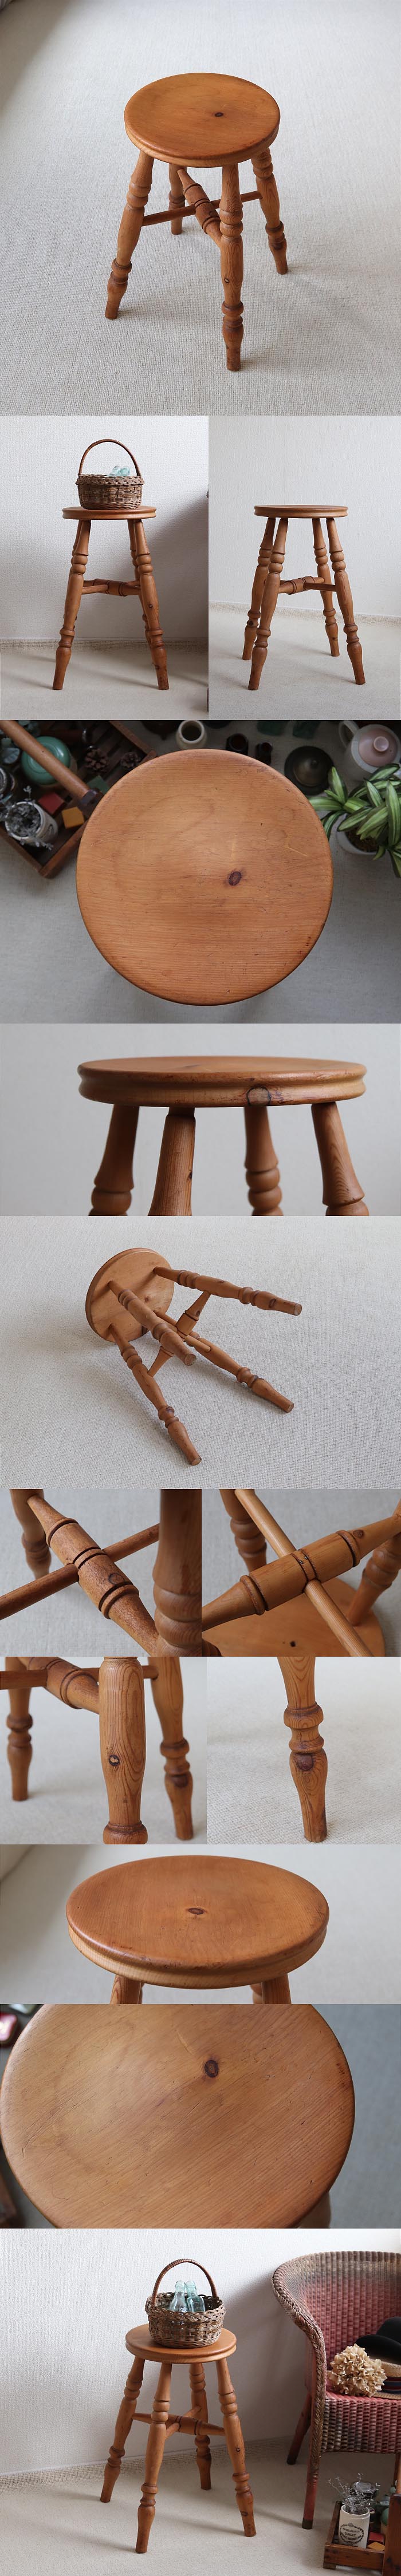 イギリス アンティーク スツール 無垢材 丸椅子 アンティーク ナチュラル 家具「飾り台にも」T-865